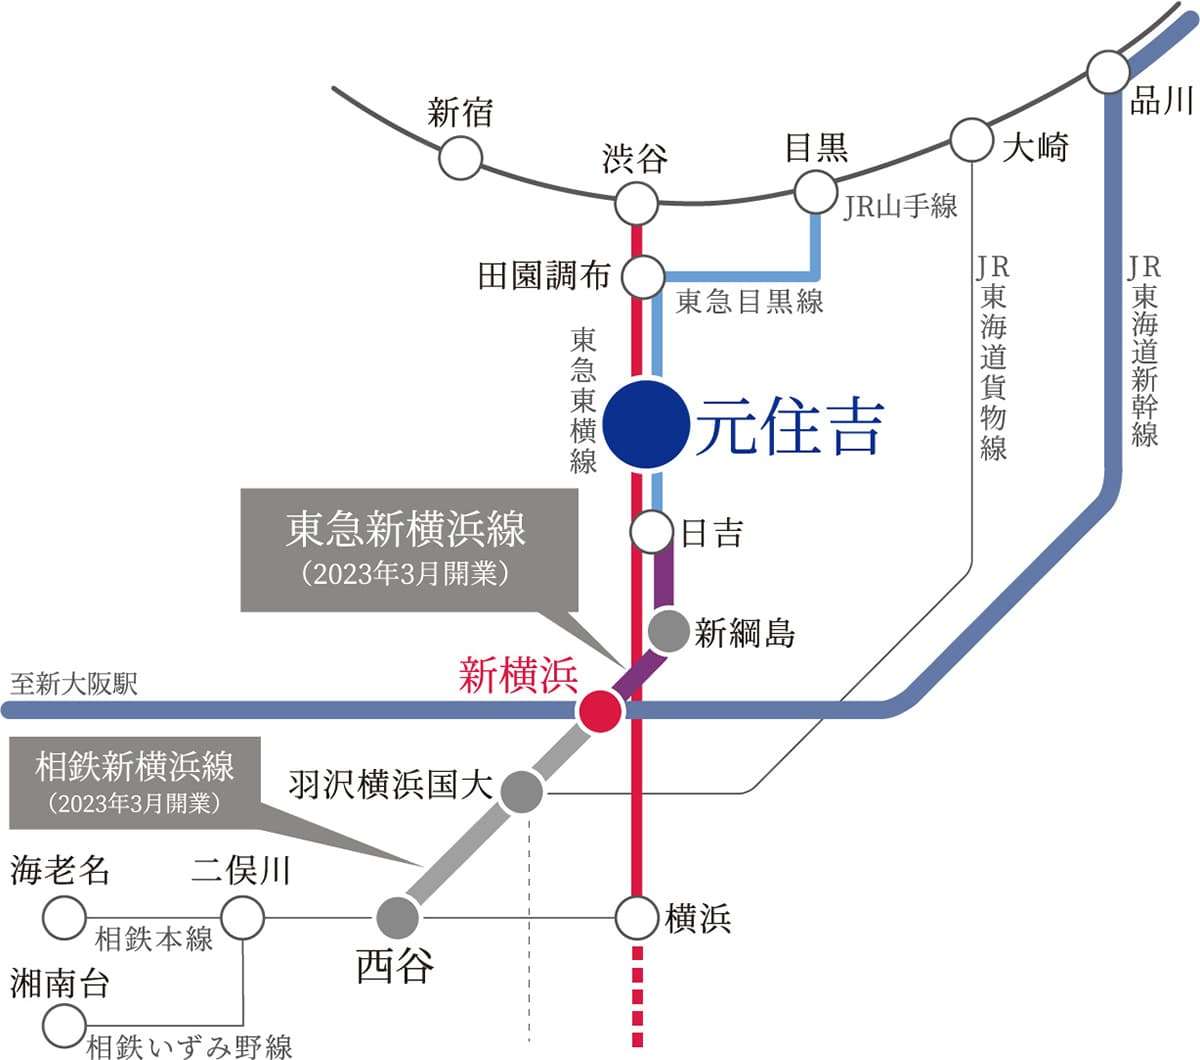 東急新横浜線路線図